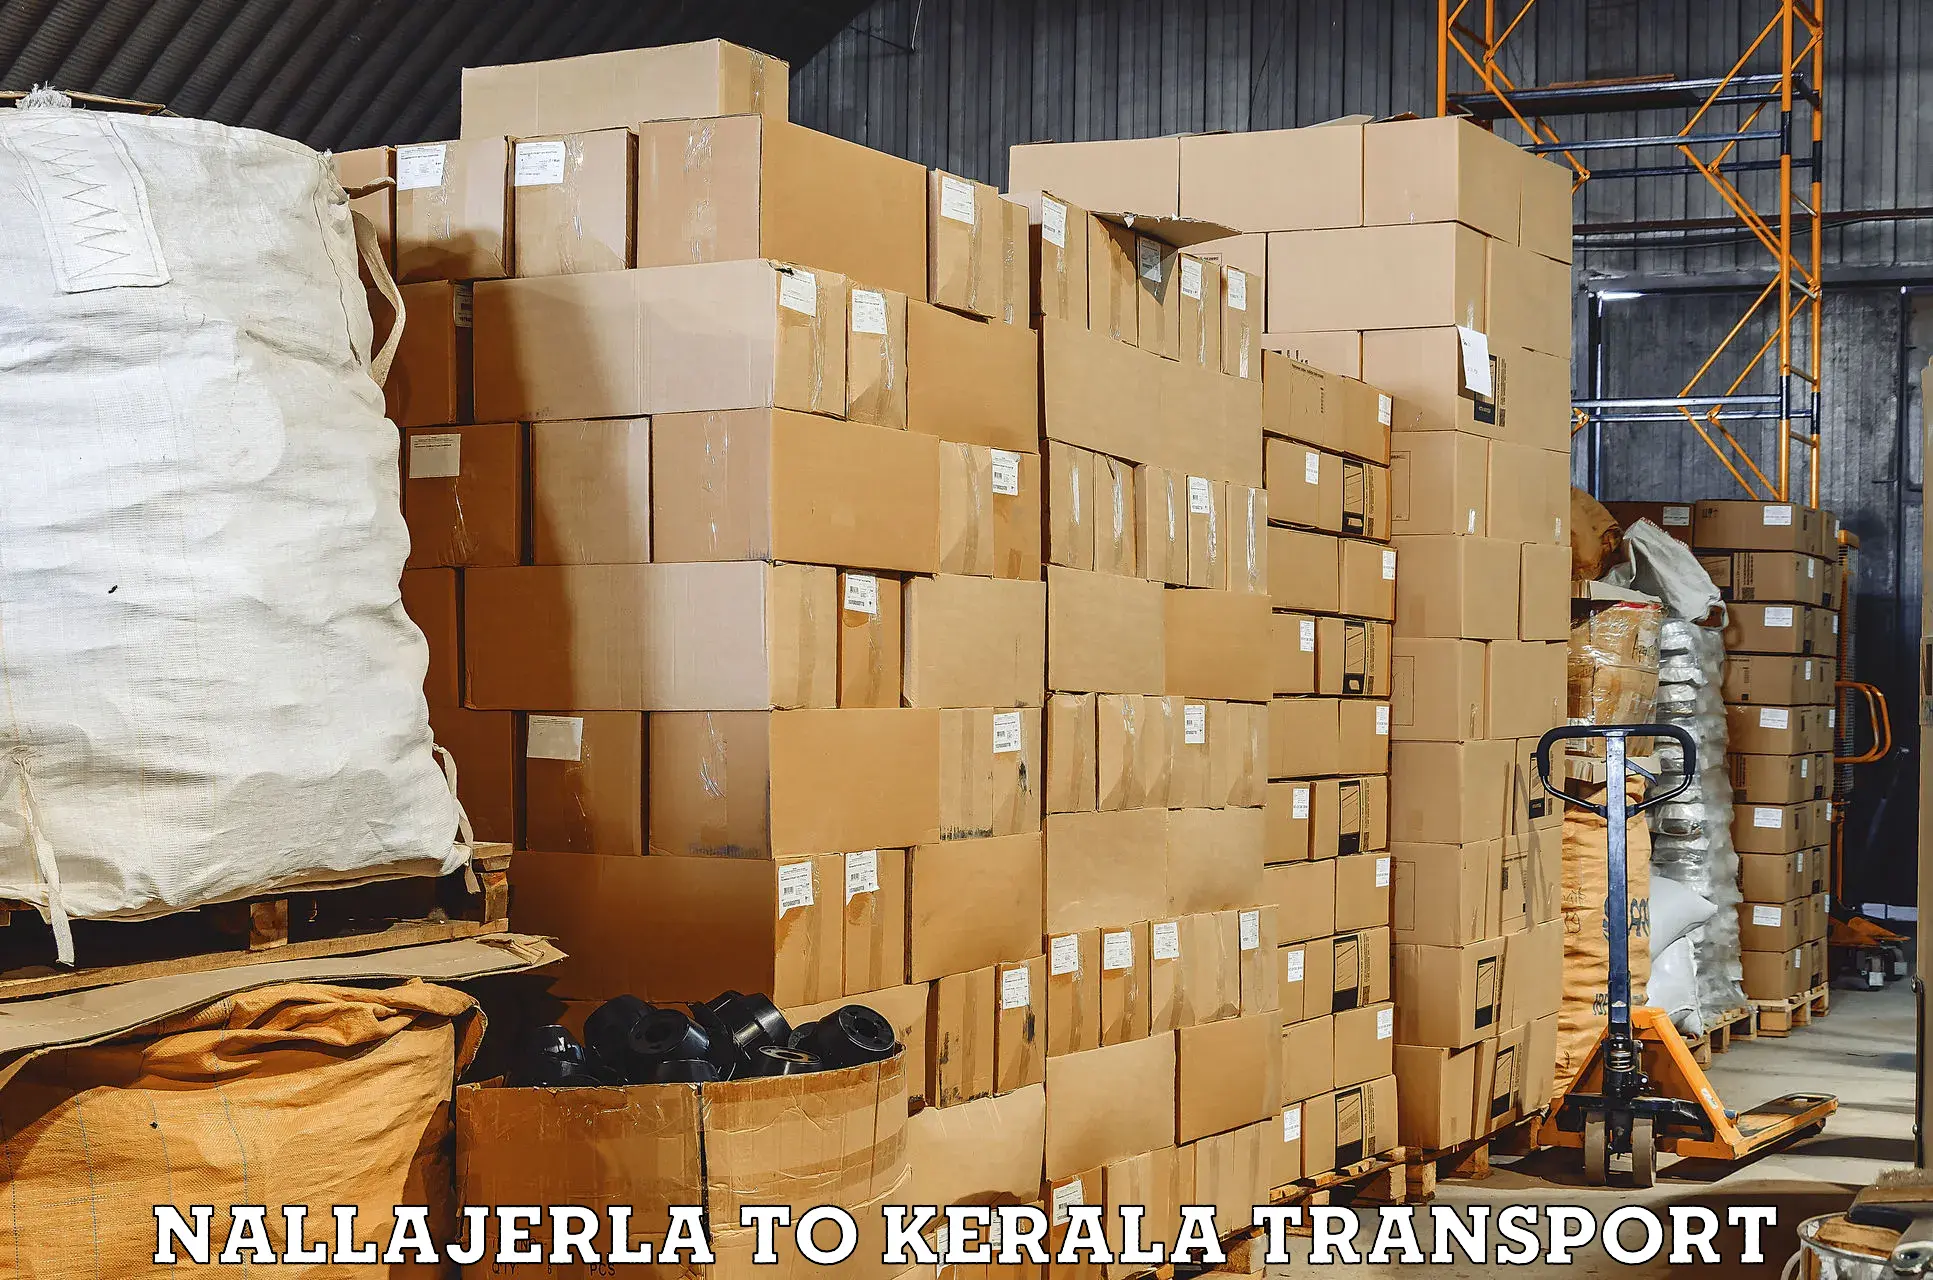 Nearest transport service Nallajerla to IIT Palakkad